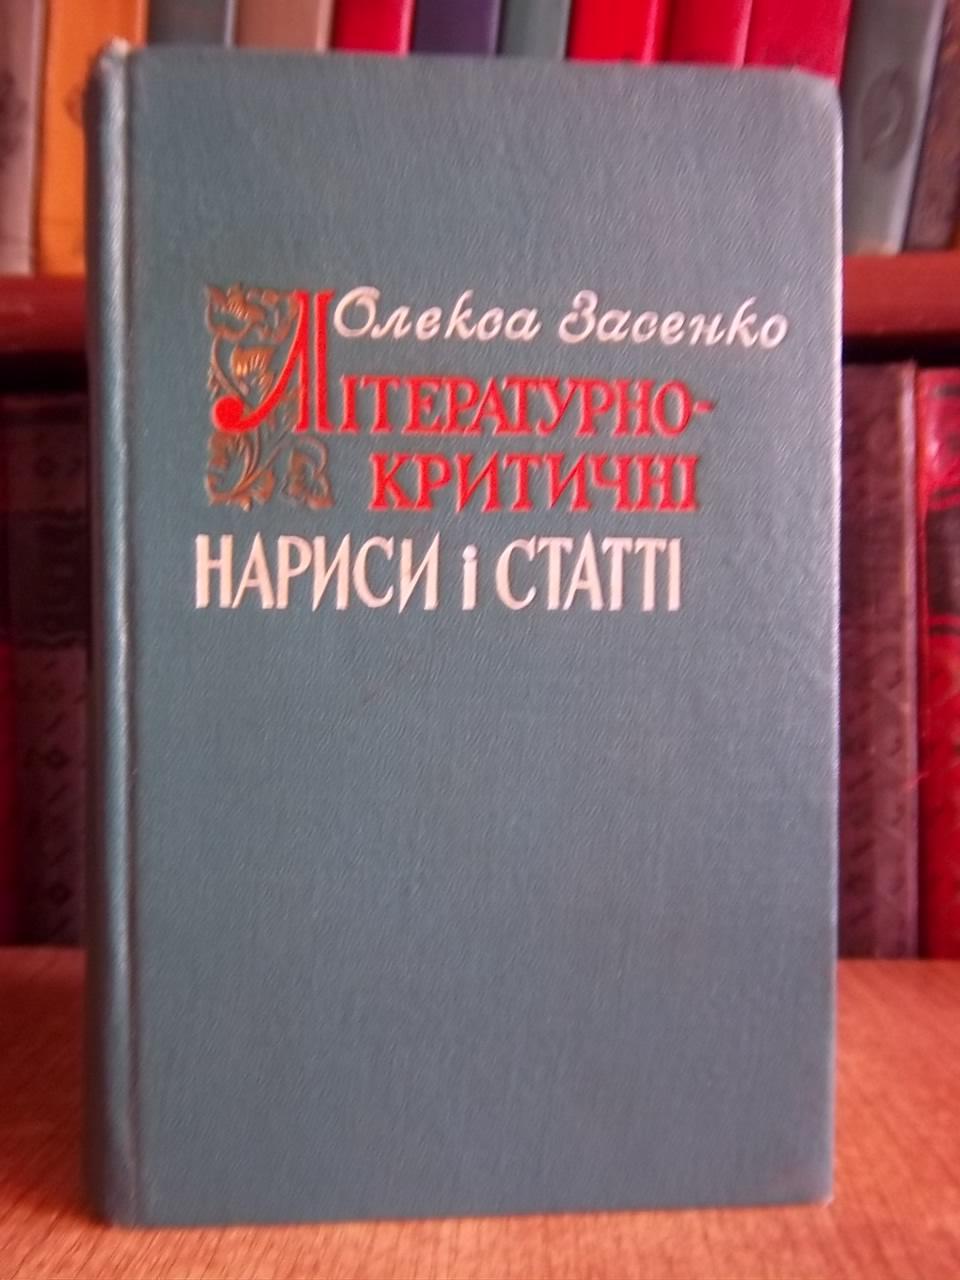 Олекса Засенко.	Літературно-критичн і нариси і статті.